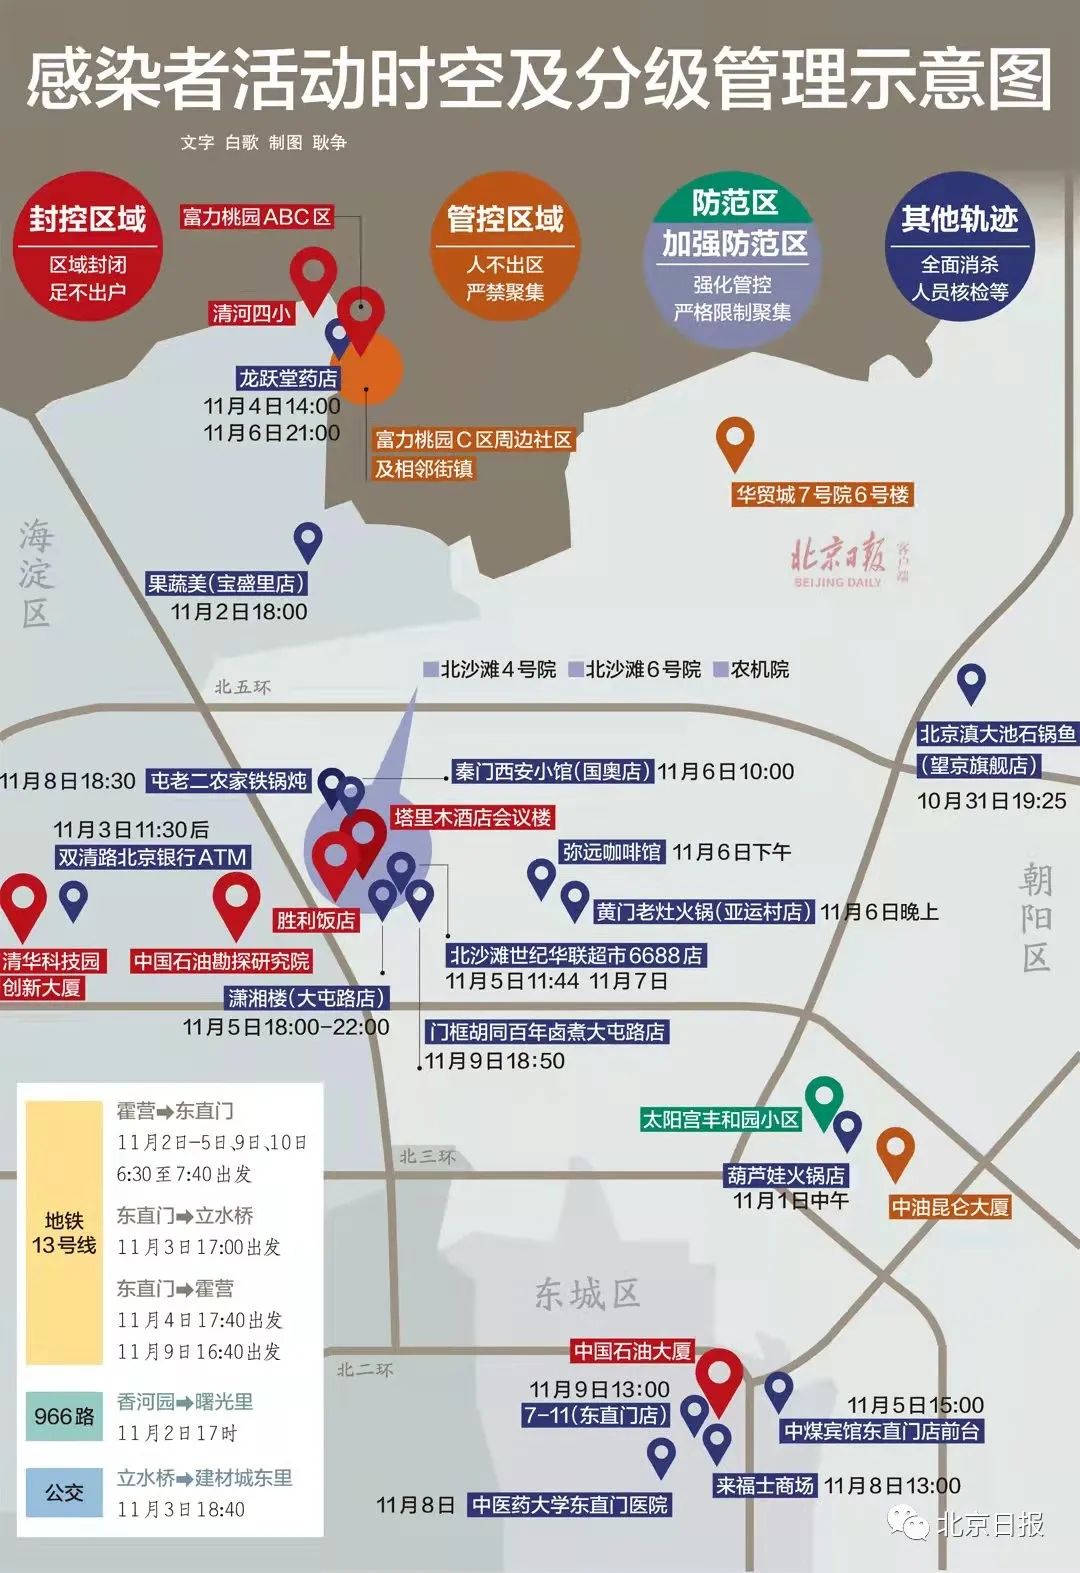 北京疫情轨迹图片